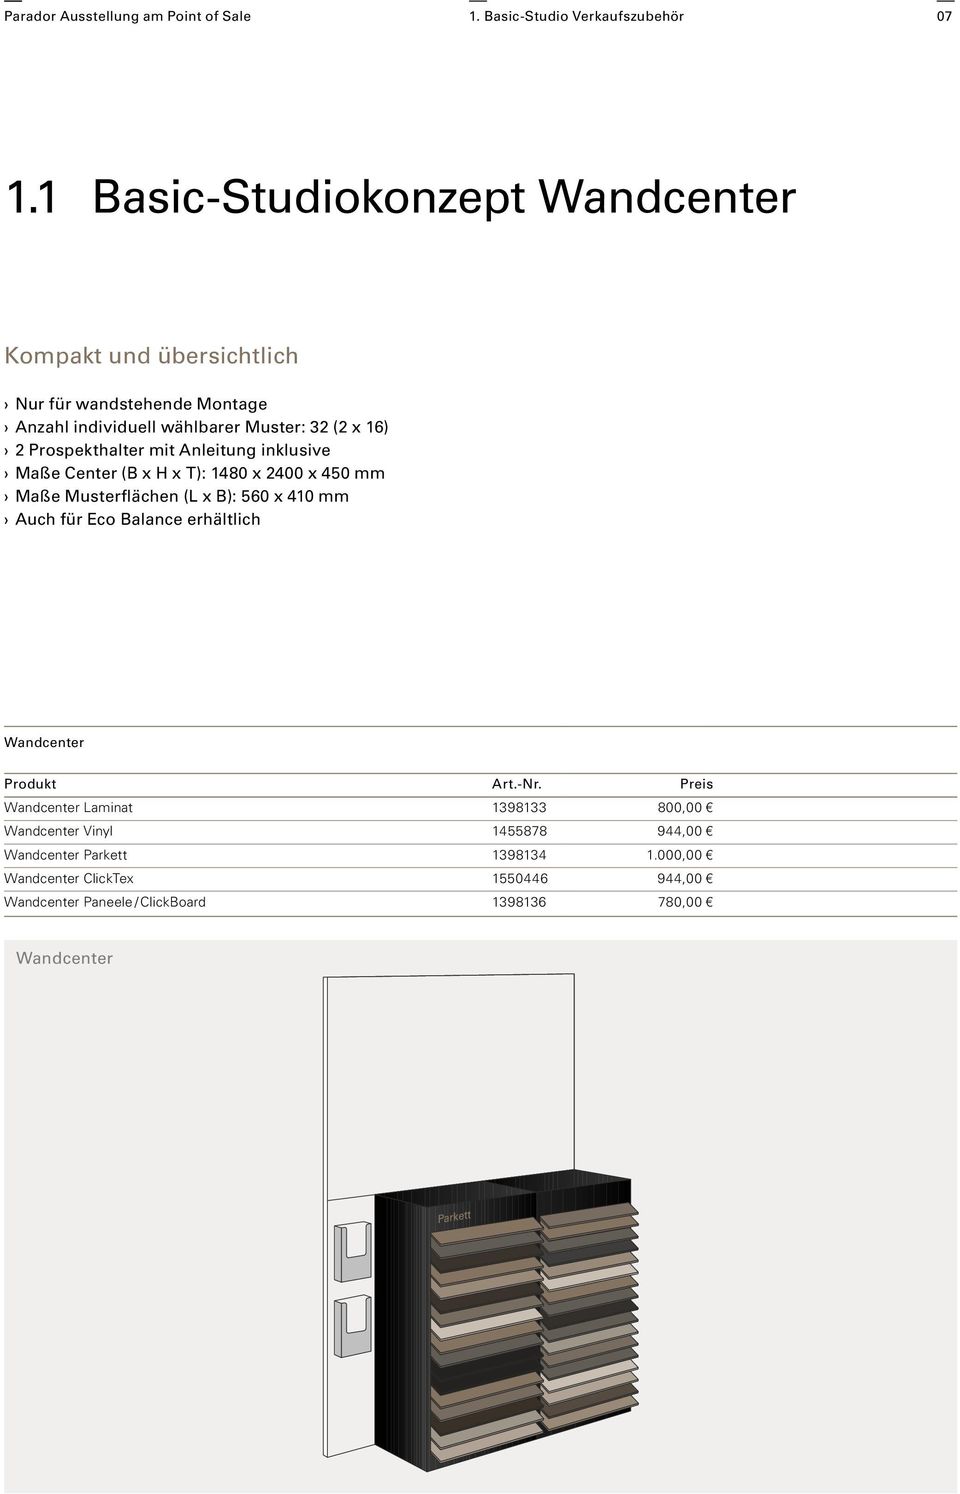 Prospekthalter mit Anleitung inklusive Maße Center (B x H x T): 1480 x 2400 x 450 mm Maße Musterflächen (L x B): 560 x 410 mm Auch für Eco